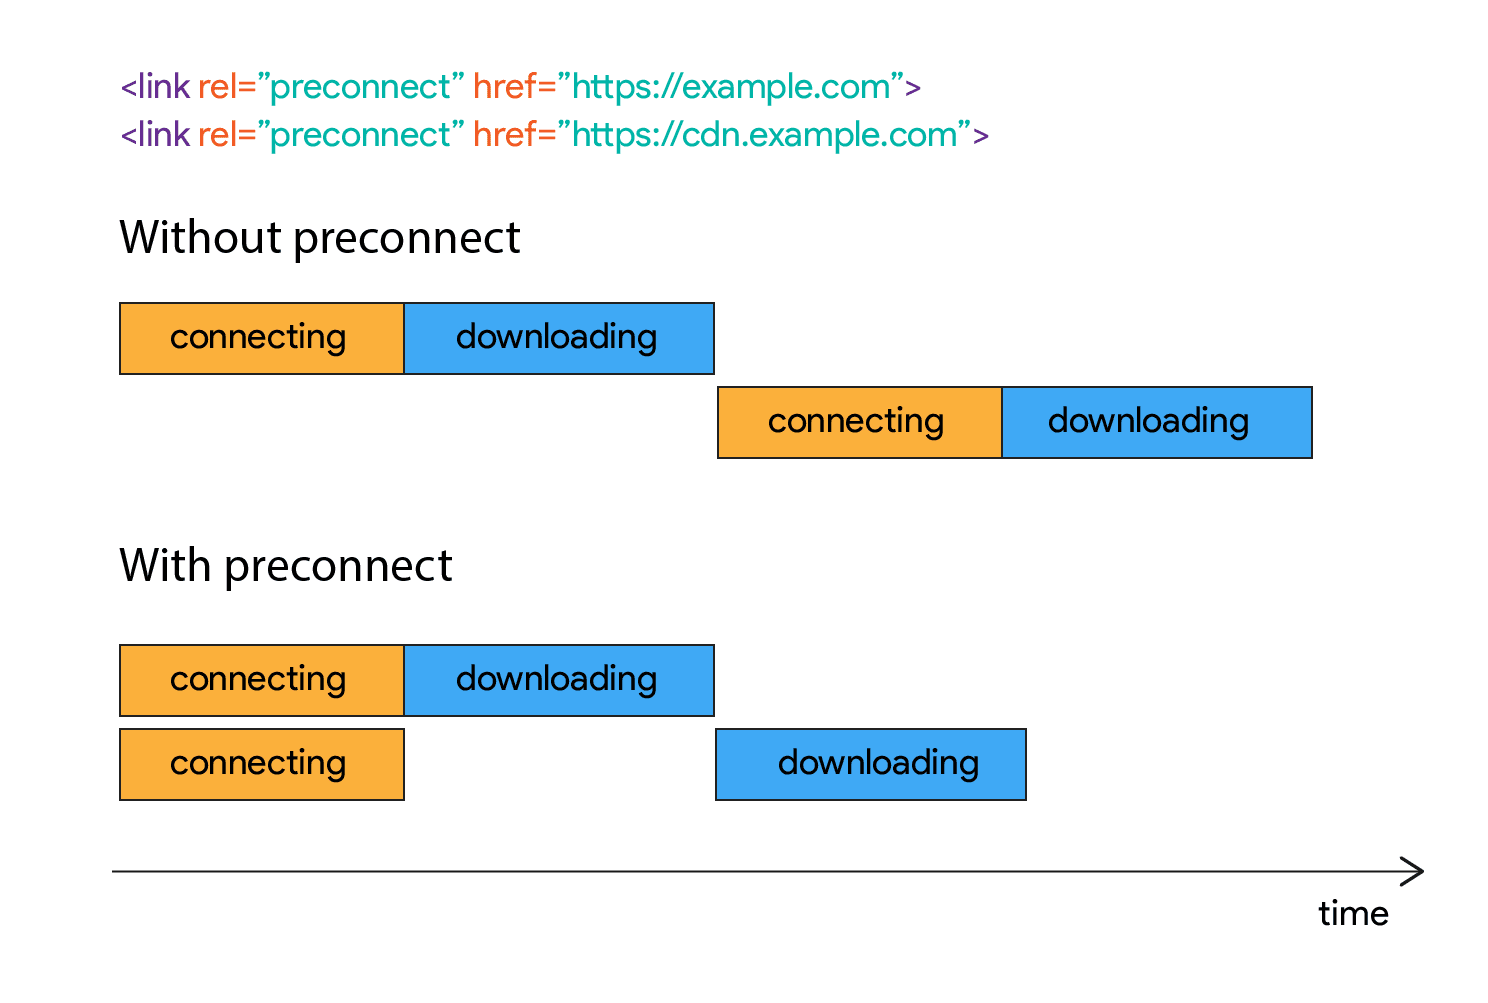 Bağlantı kurulduktan sonra indirme işleminin bir süre boyunca nasıl başlamadığını gösteren şema.